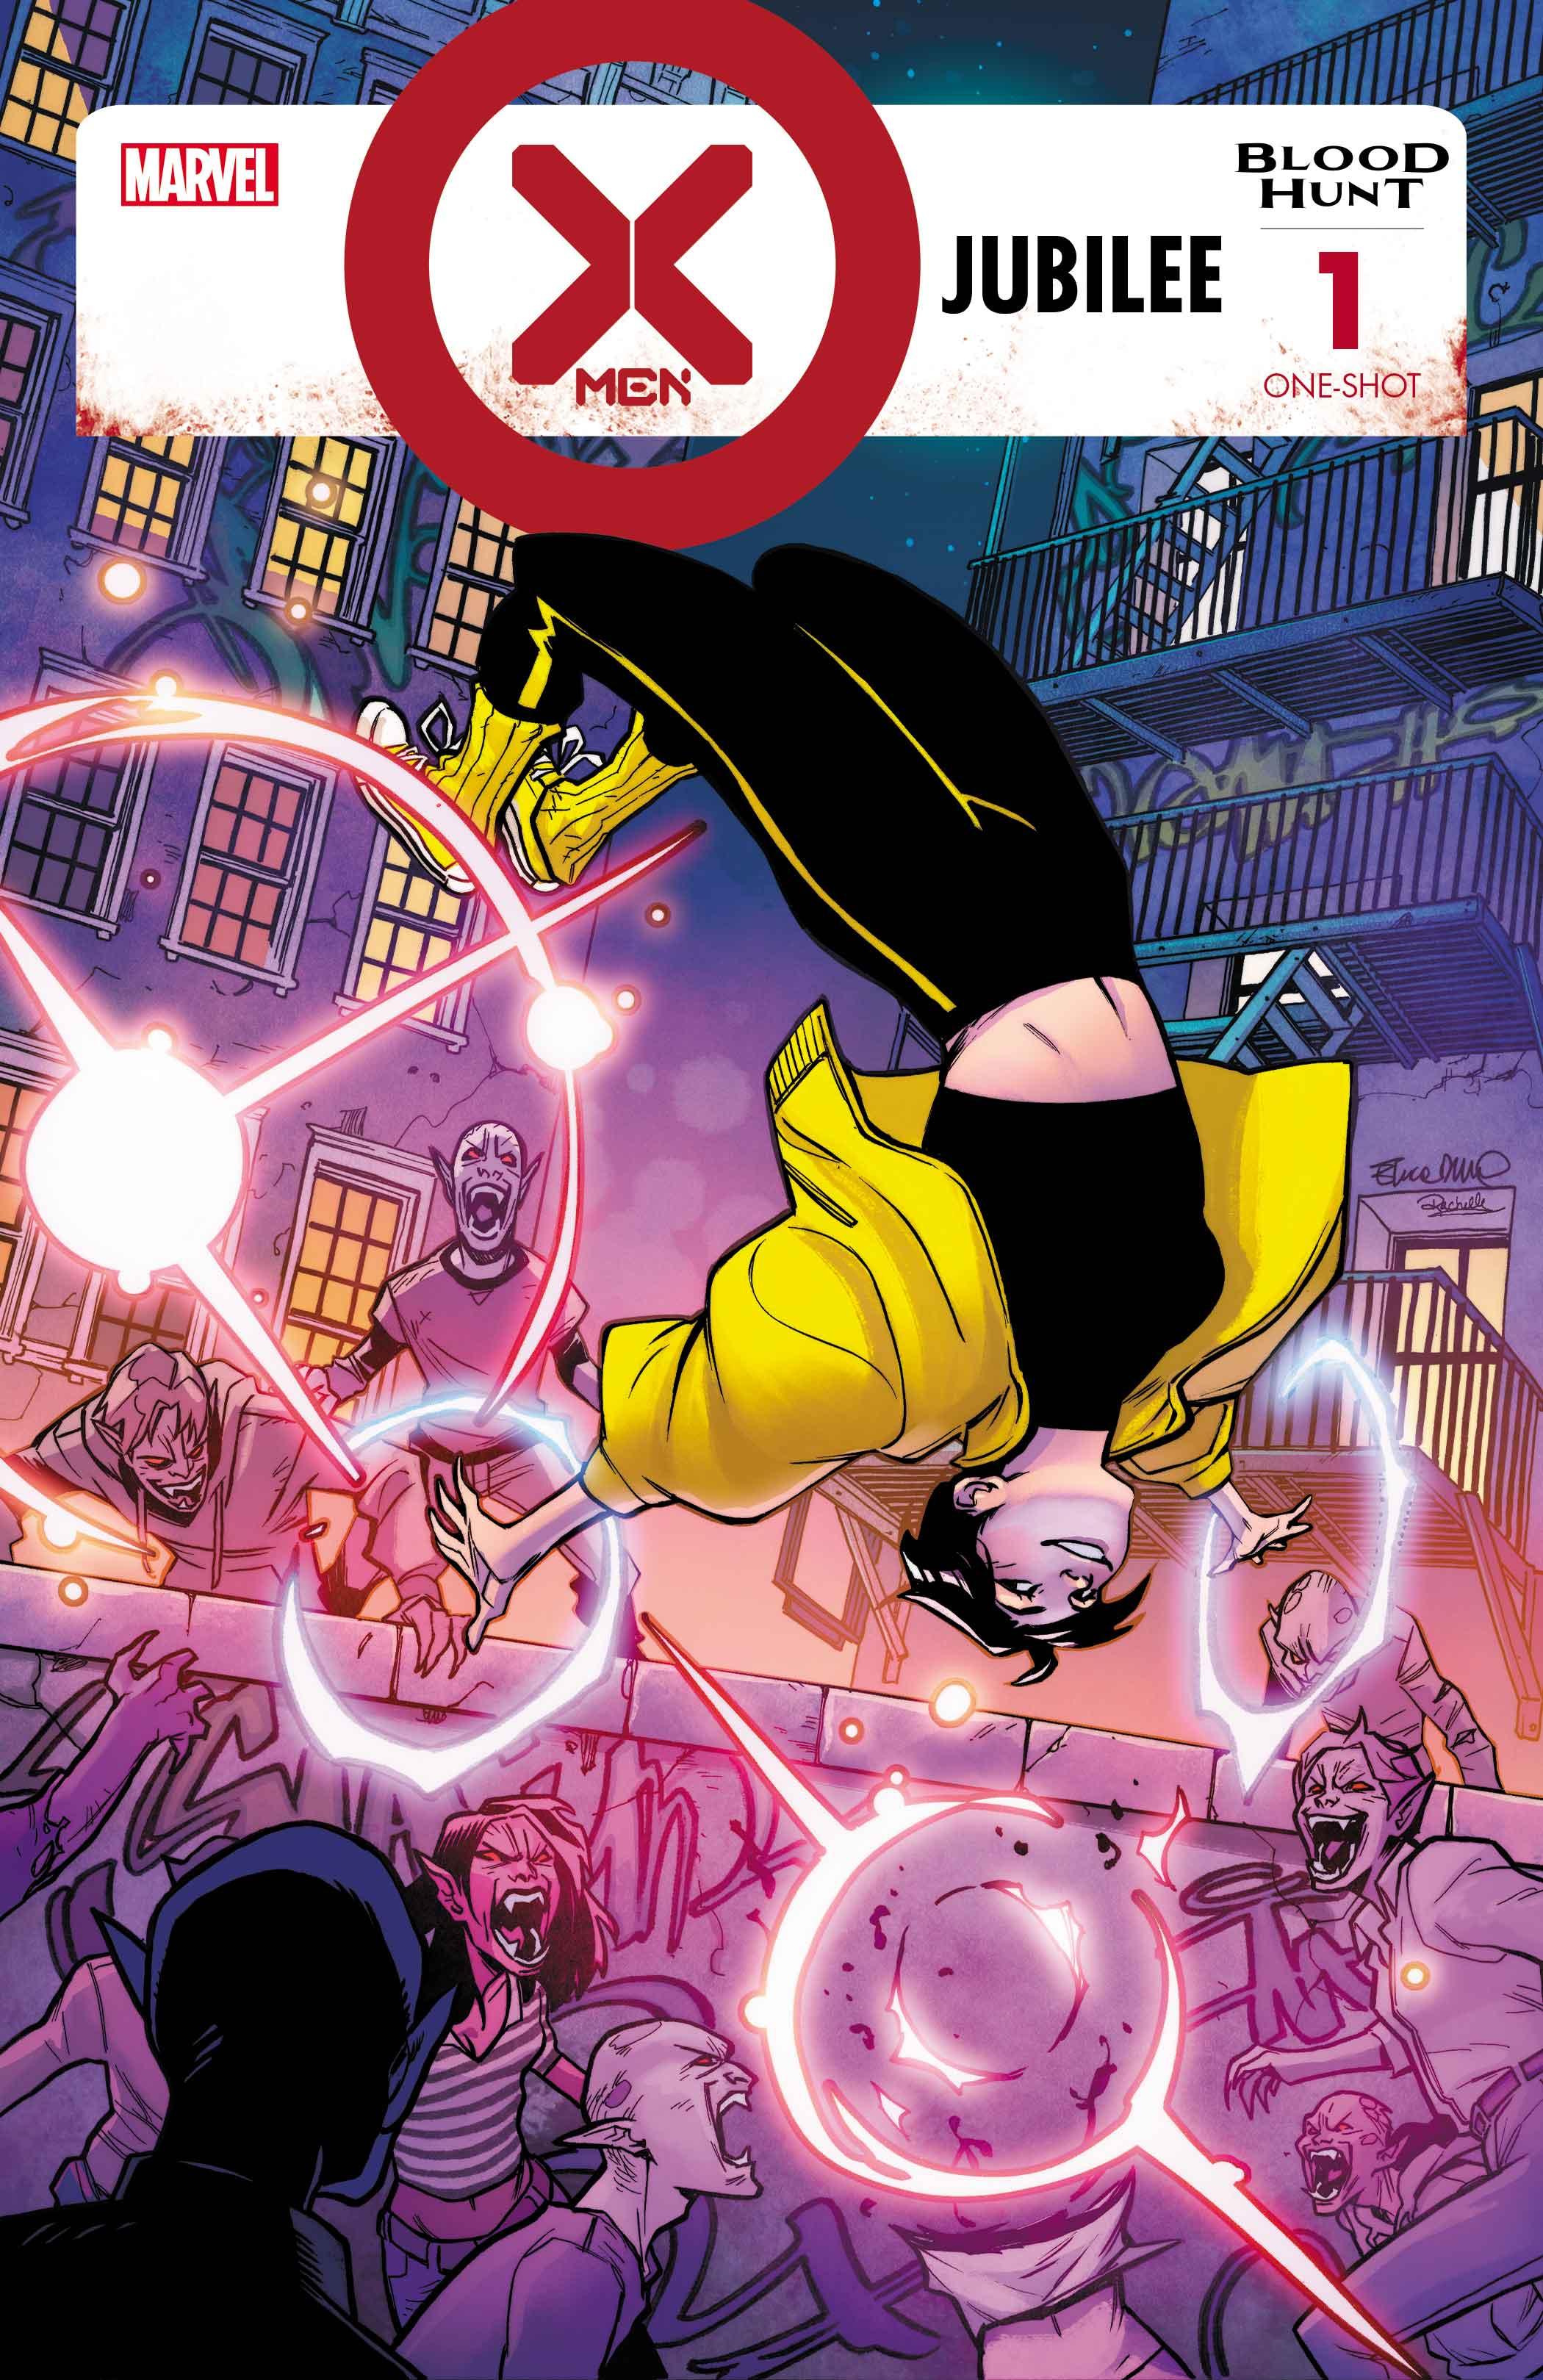 X-Men: Blood Hunt - Jubilee cover art